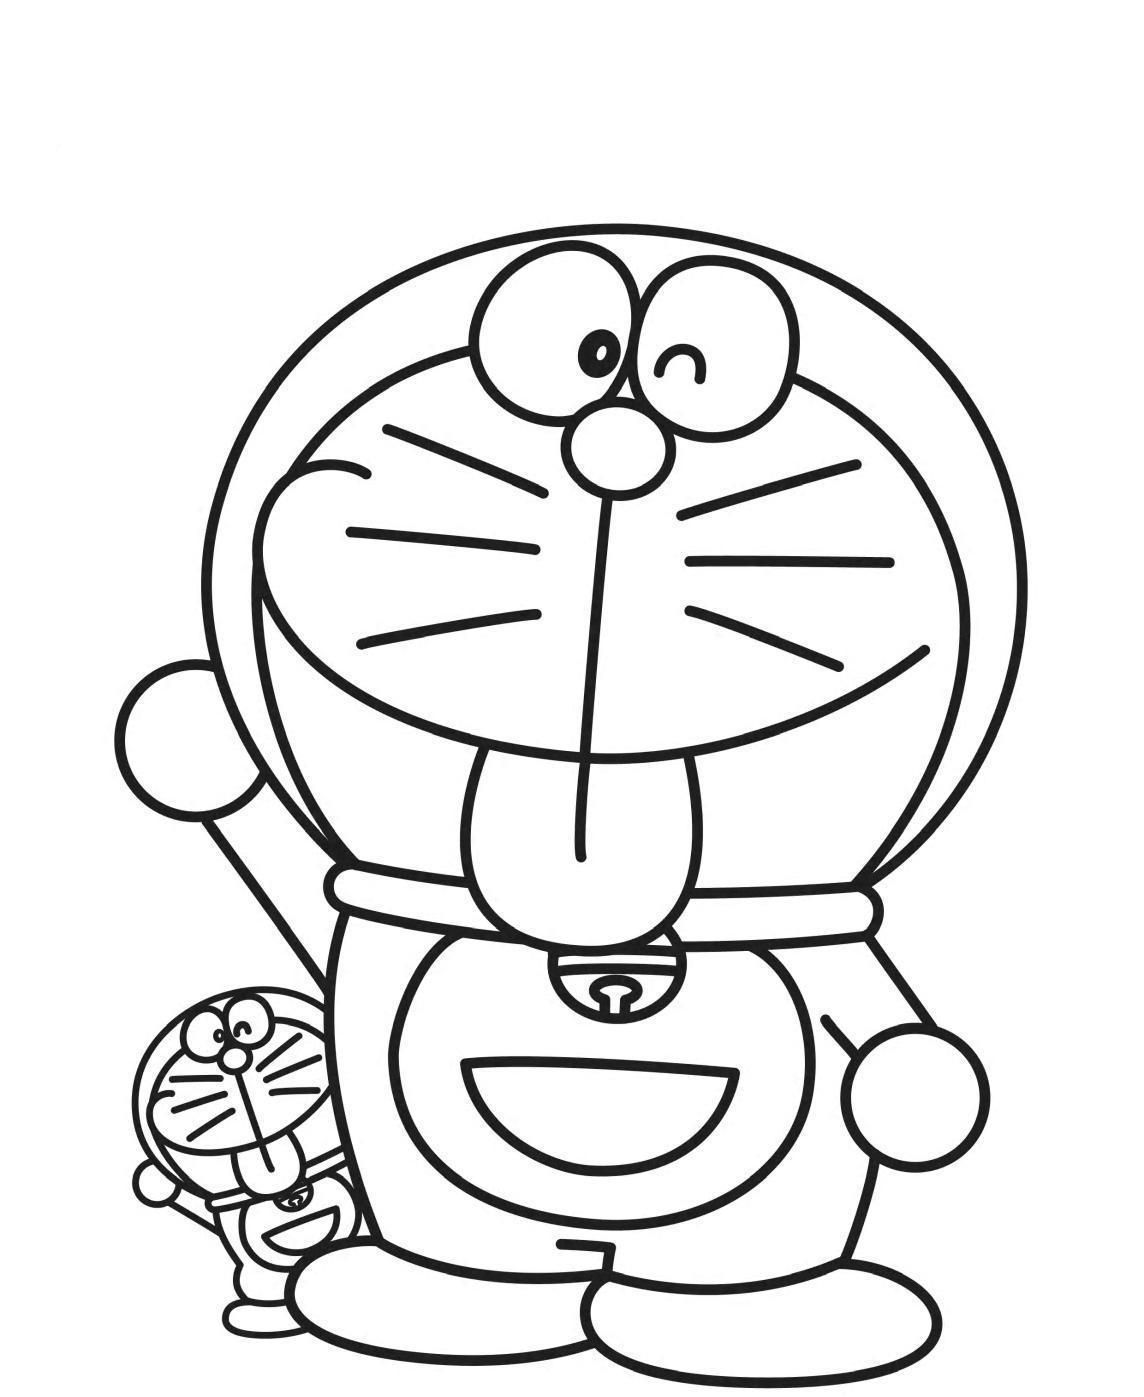 Tô màu Doraemon không chỉ giúp trẻ em giải trí mà còn phát triển trí tưởng tượng và tay nghề. Với những hình ảnh dễ thương của Doraemon và bạn bè, các bé sẽ có những giờ phút thật thoải mái và vui nhộn.